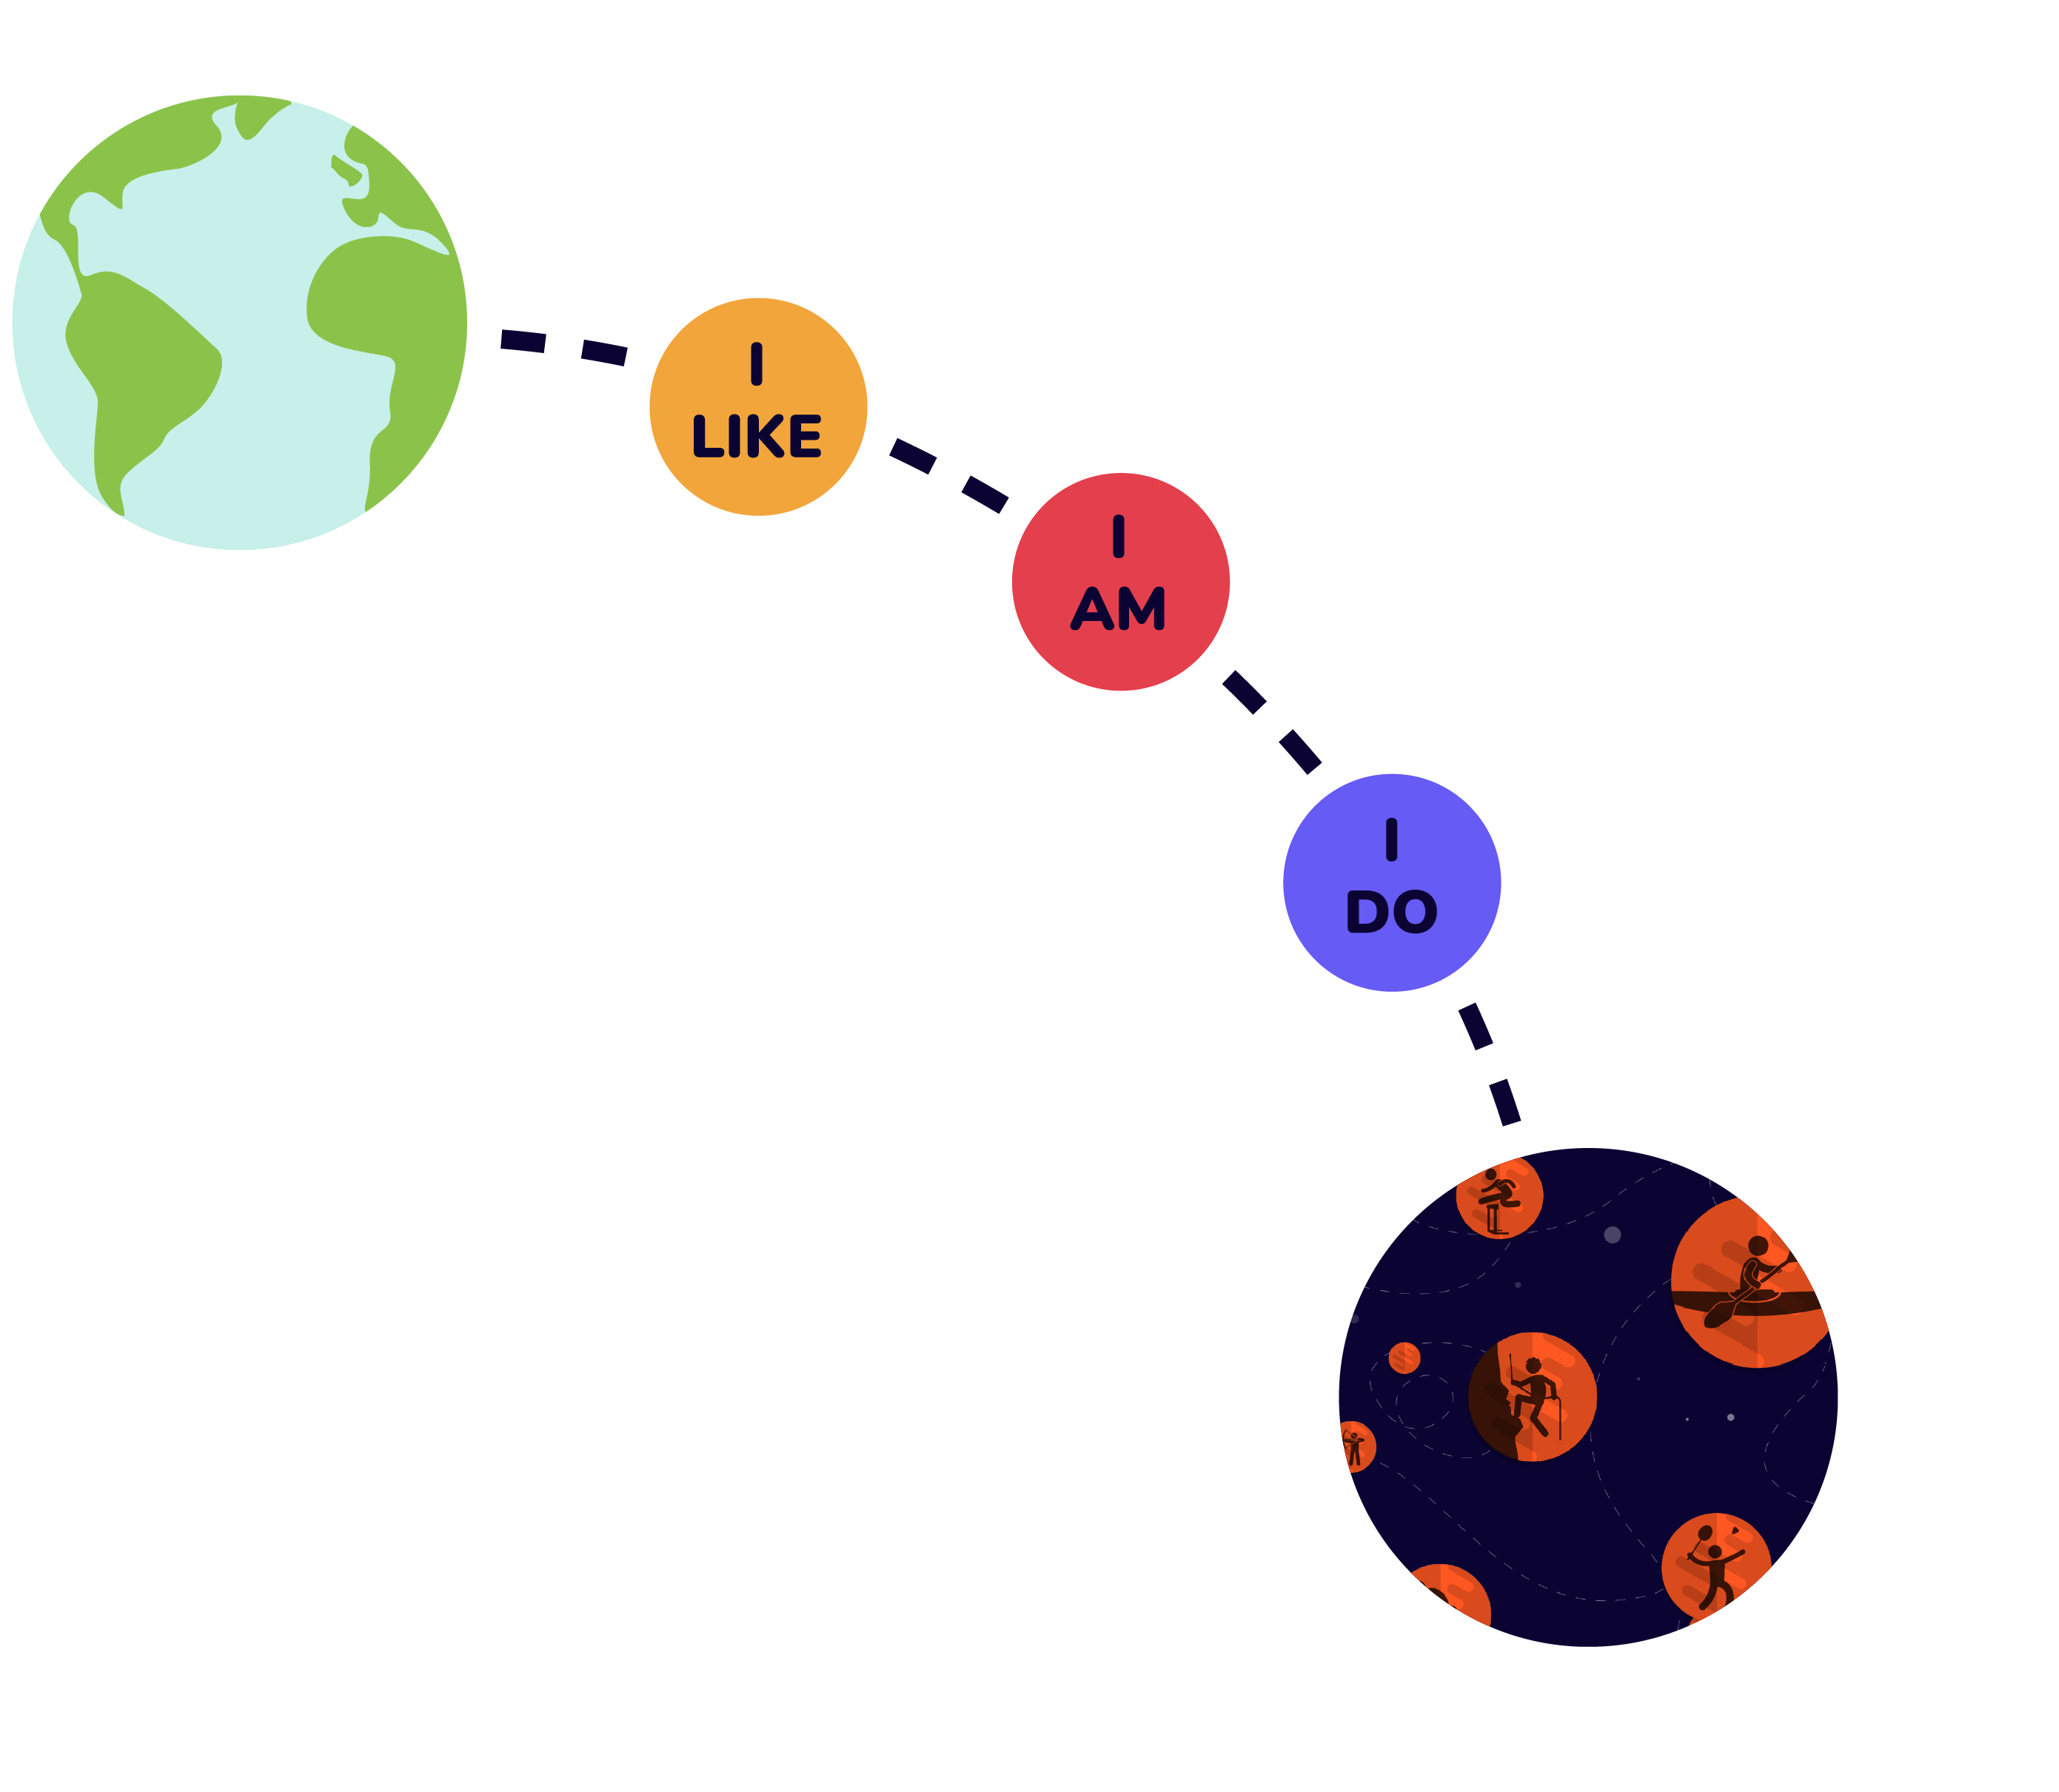 5 planeten op een rijtje: Aarde, I LIKE, I AM, I DO, Sportplaneten